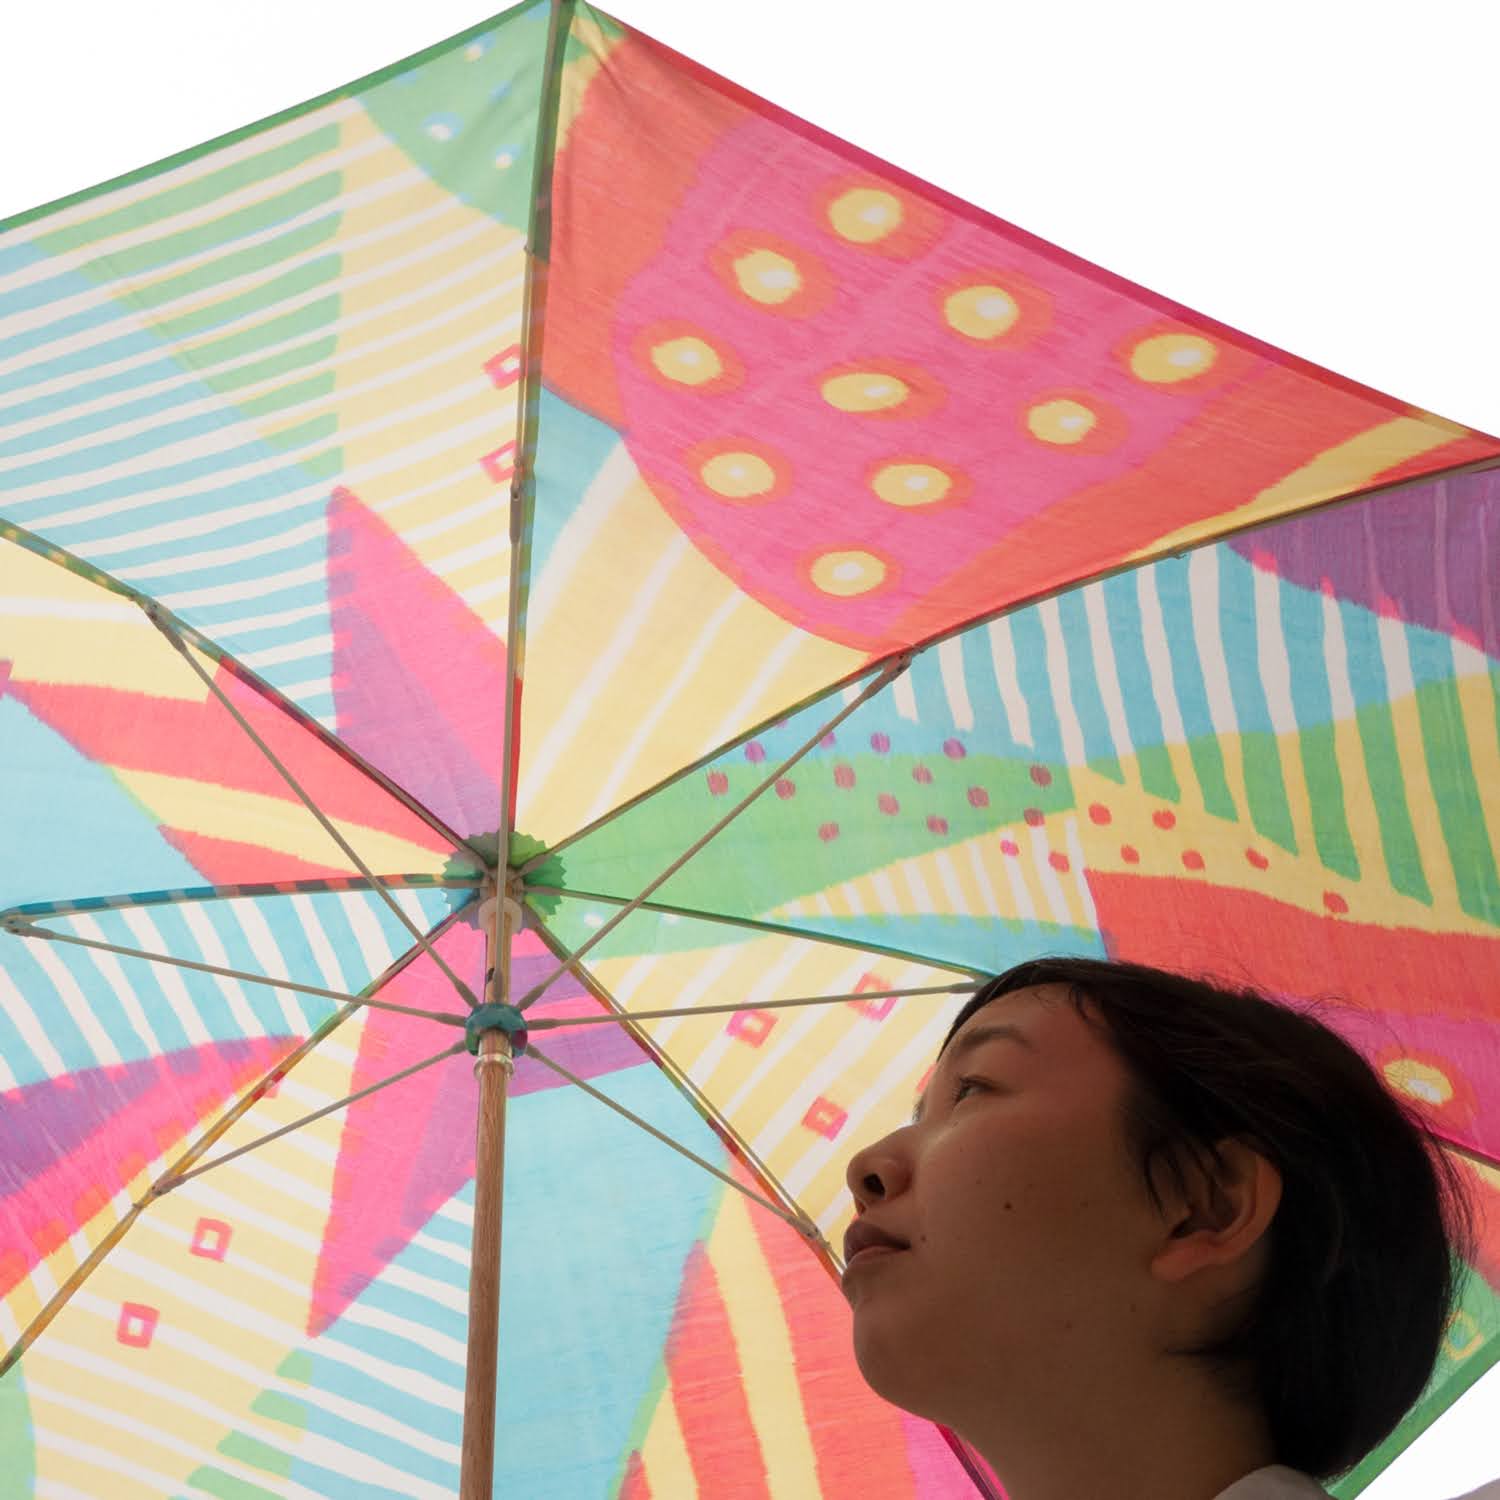 心躍るデザインの傘ですよね。